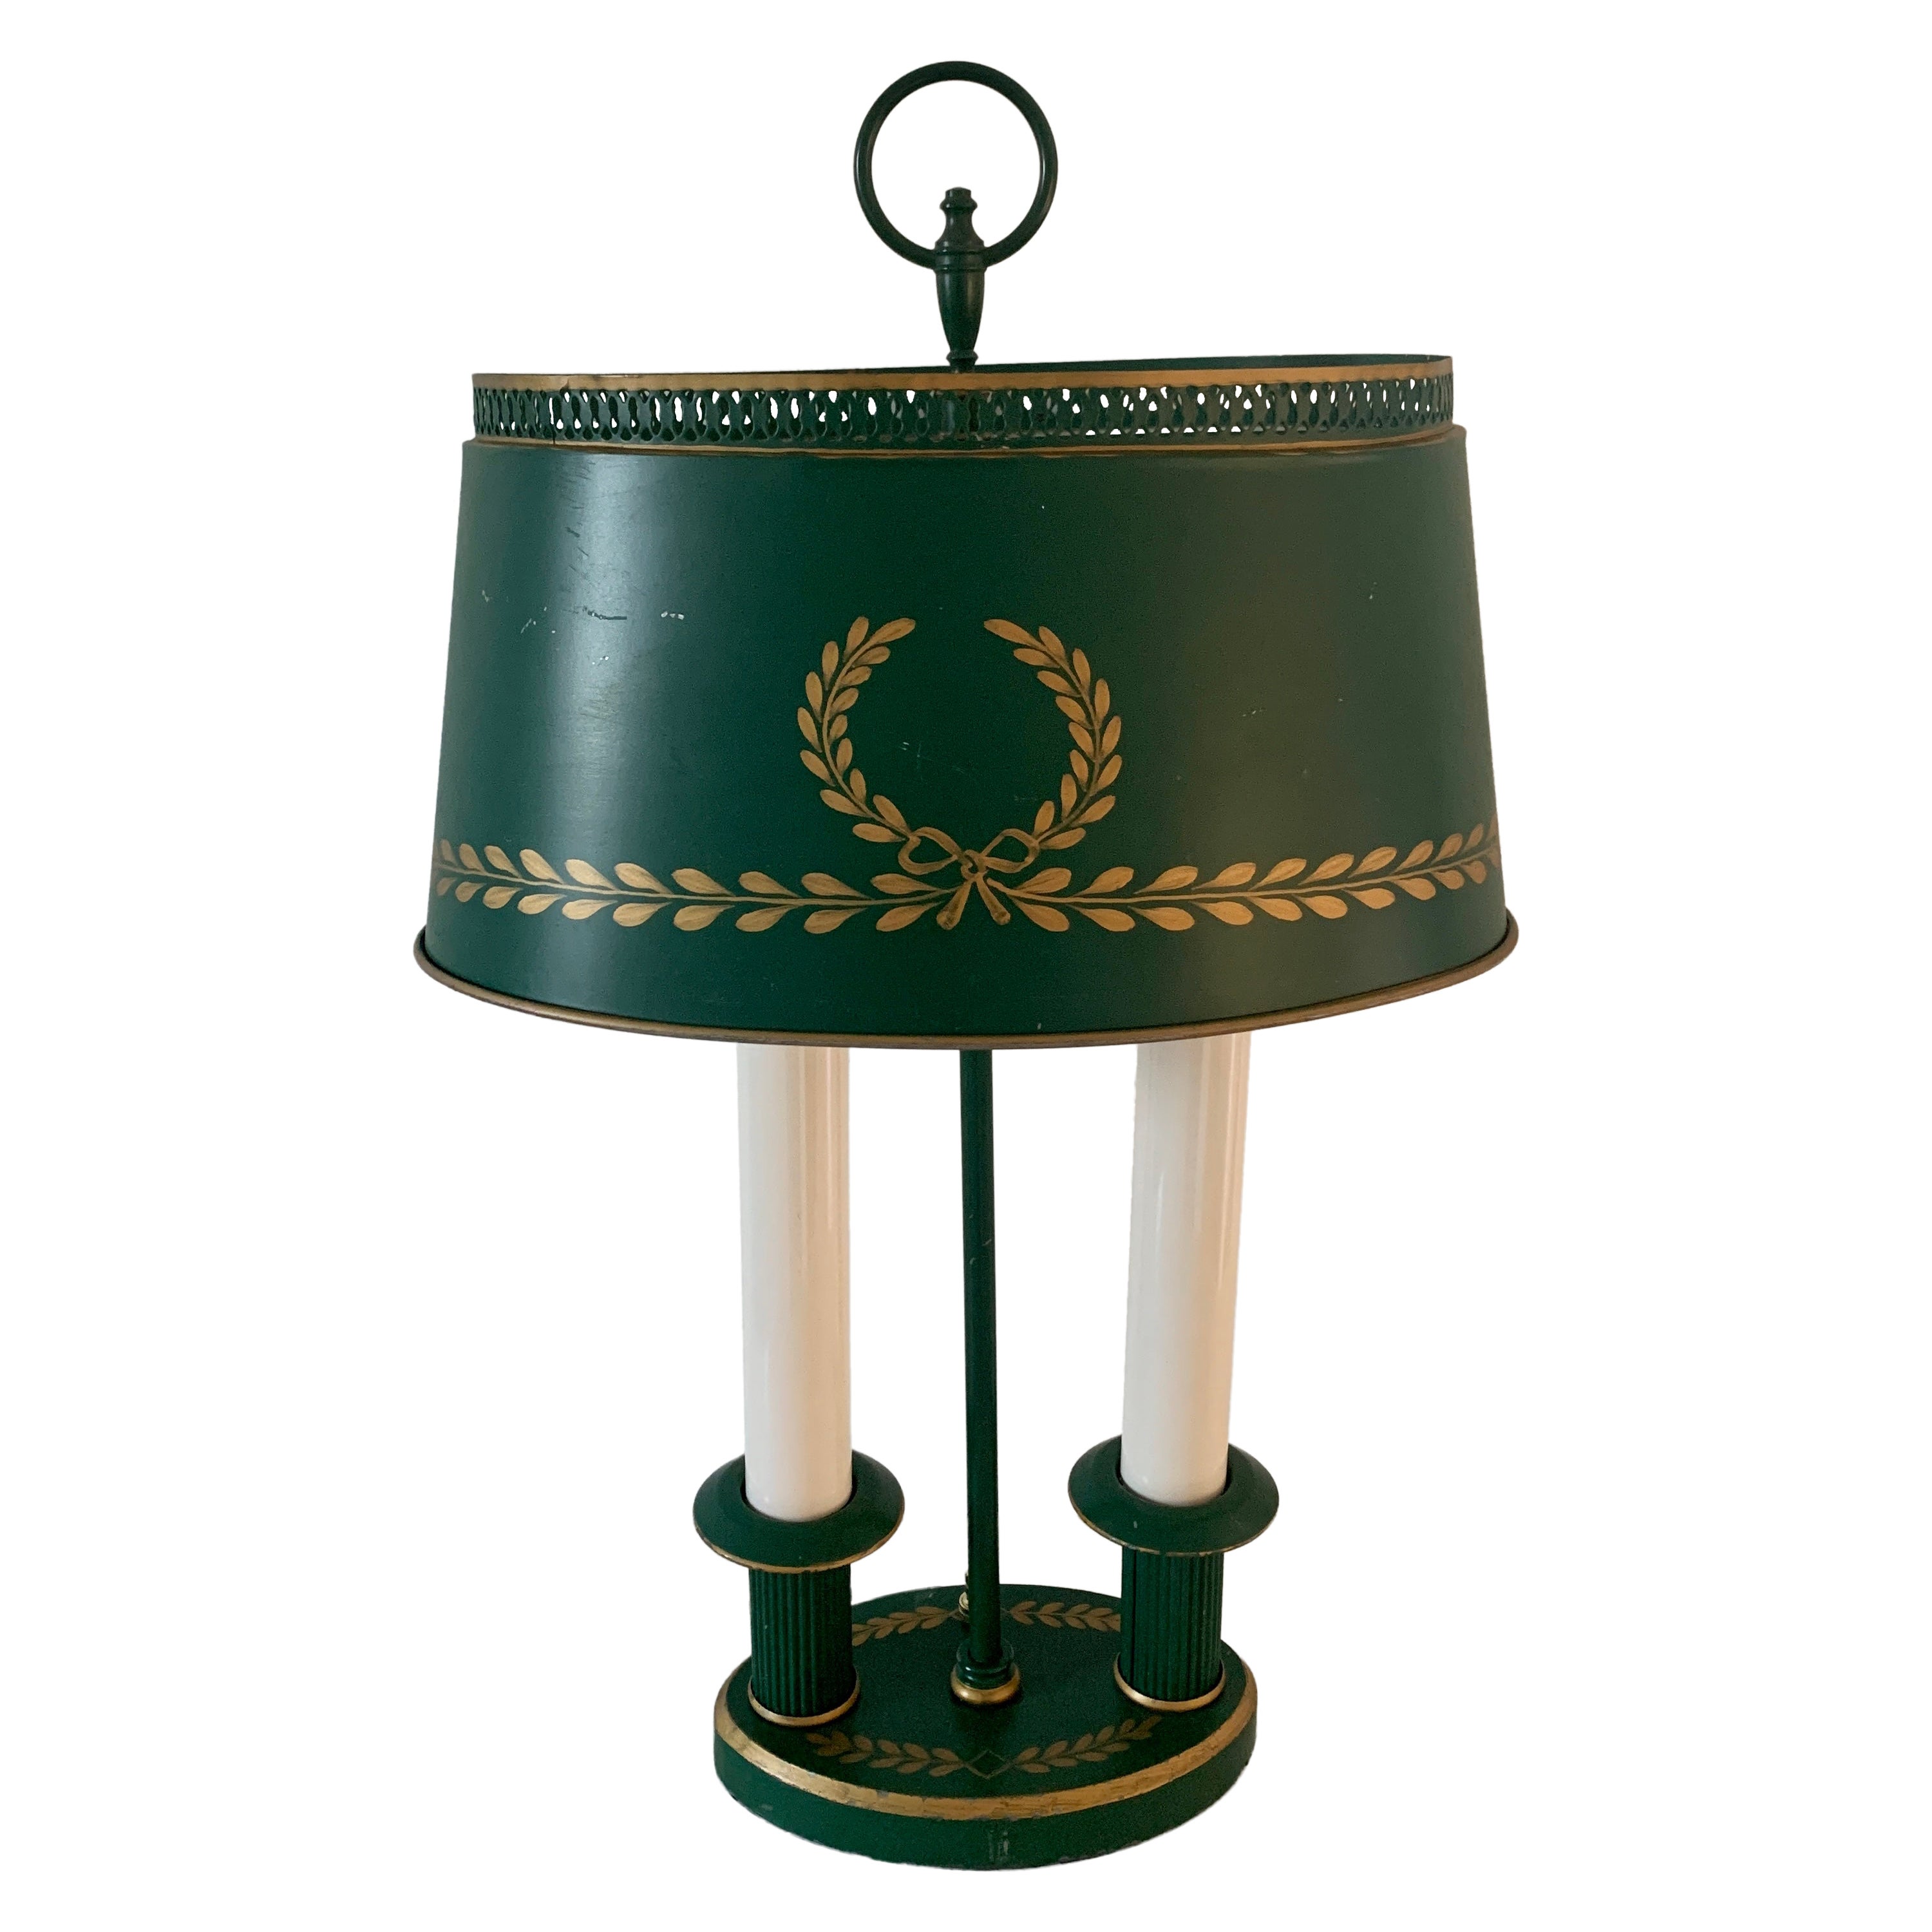 Lampe Bouillotte Régence du milieu du 20ème siècle, verte et dorée